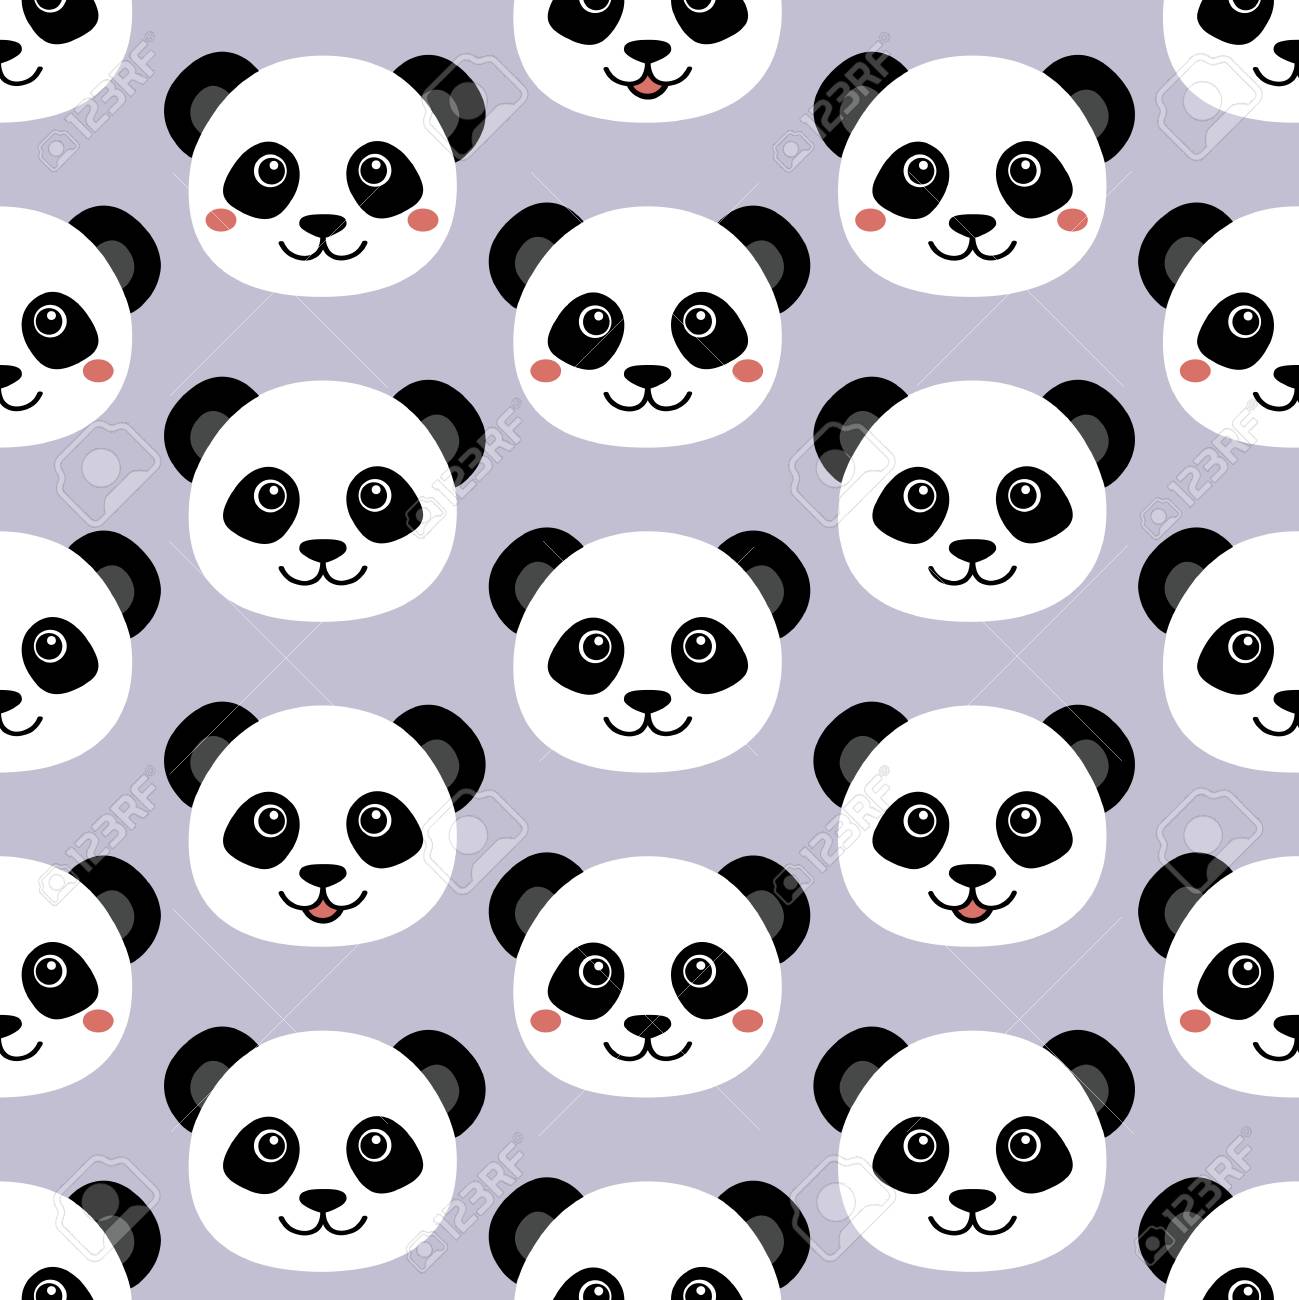 Cute Panda Face Seamless Cartoon Wallpaper Royalty Cliparts